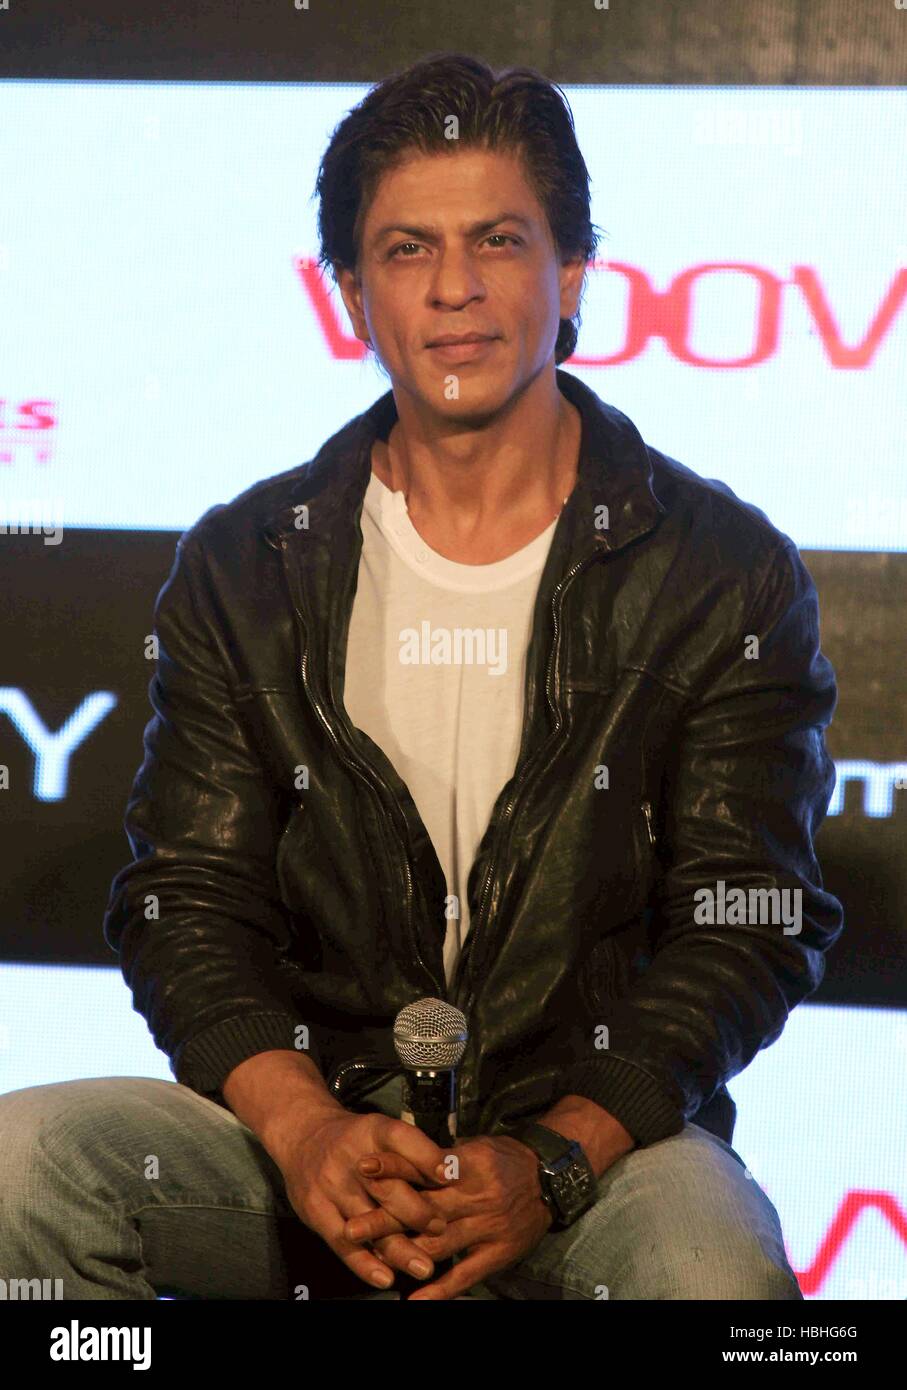 Attore Bollywood Shah Rukh Khan ritratto, camicia bianca, giacca nera, microfono in mano, al film felice anno nuovo evento a Mumbai, India Foto Stock